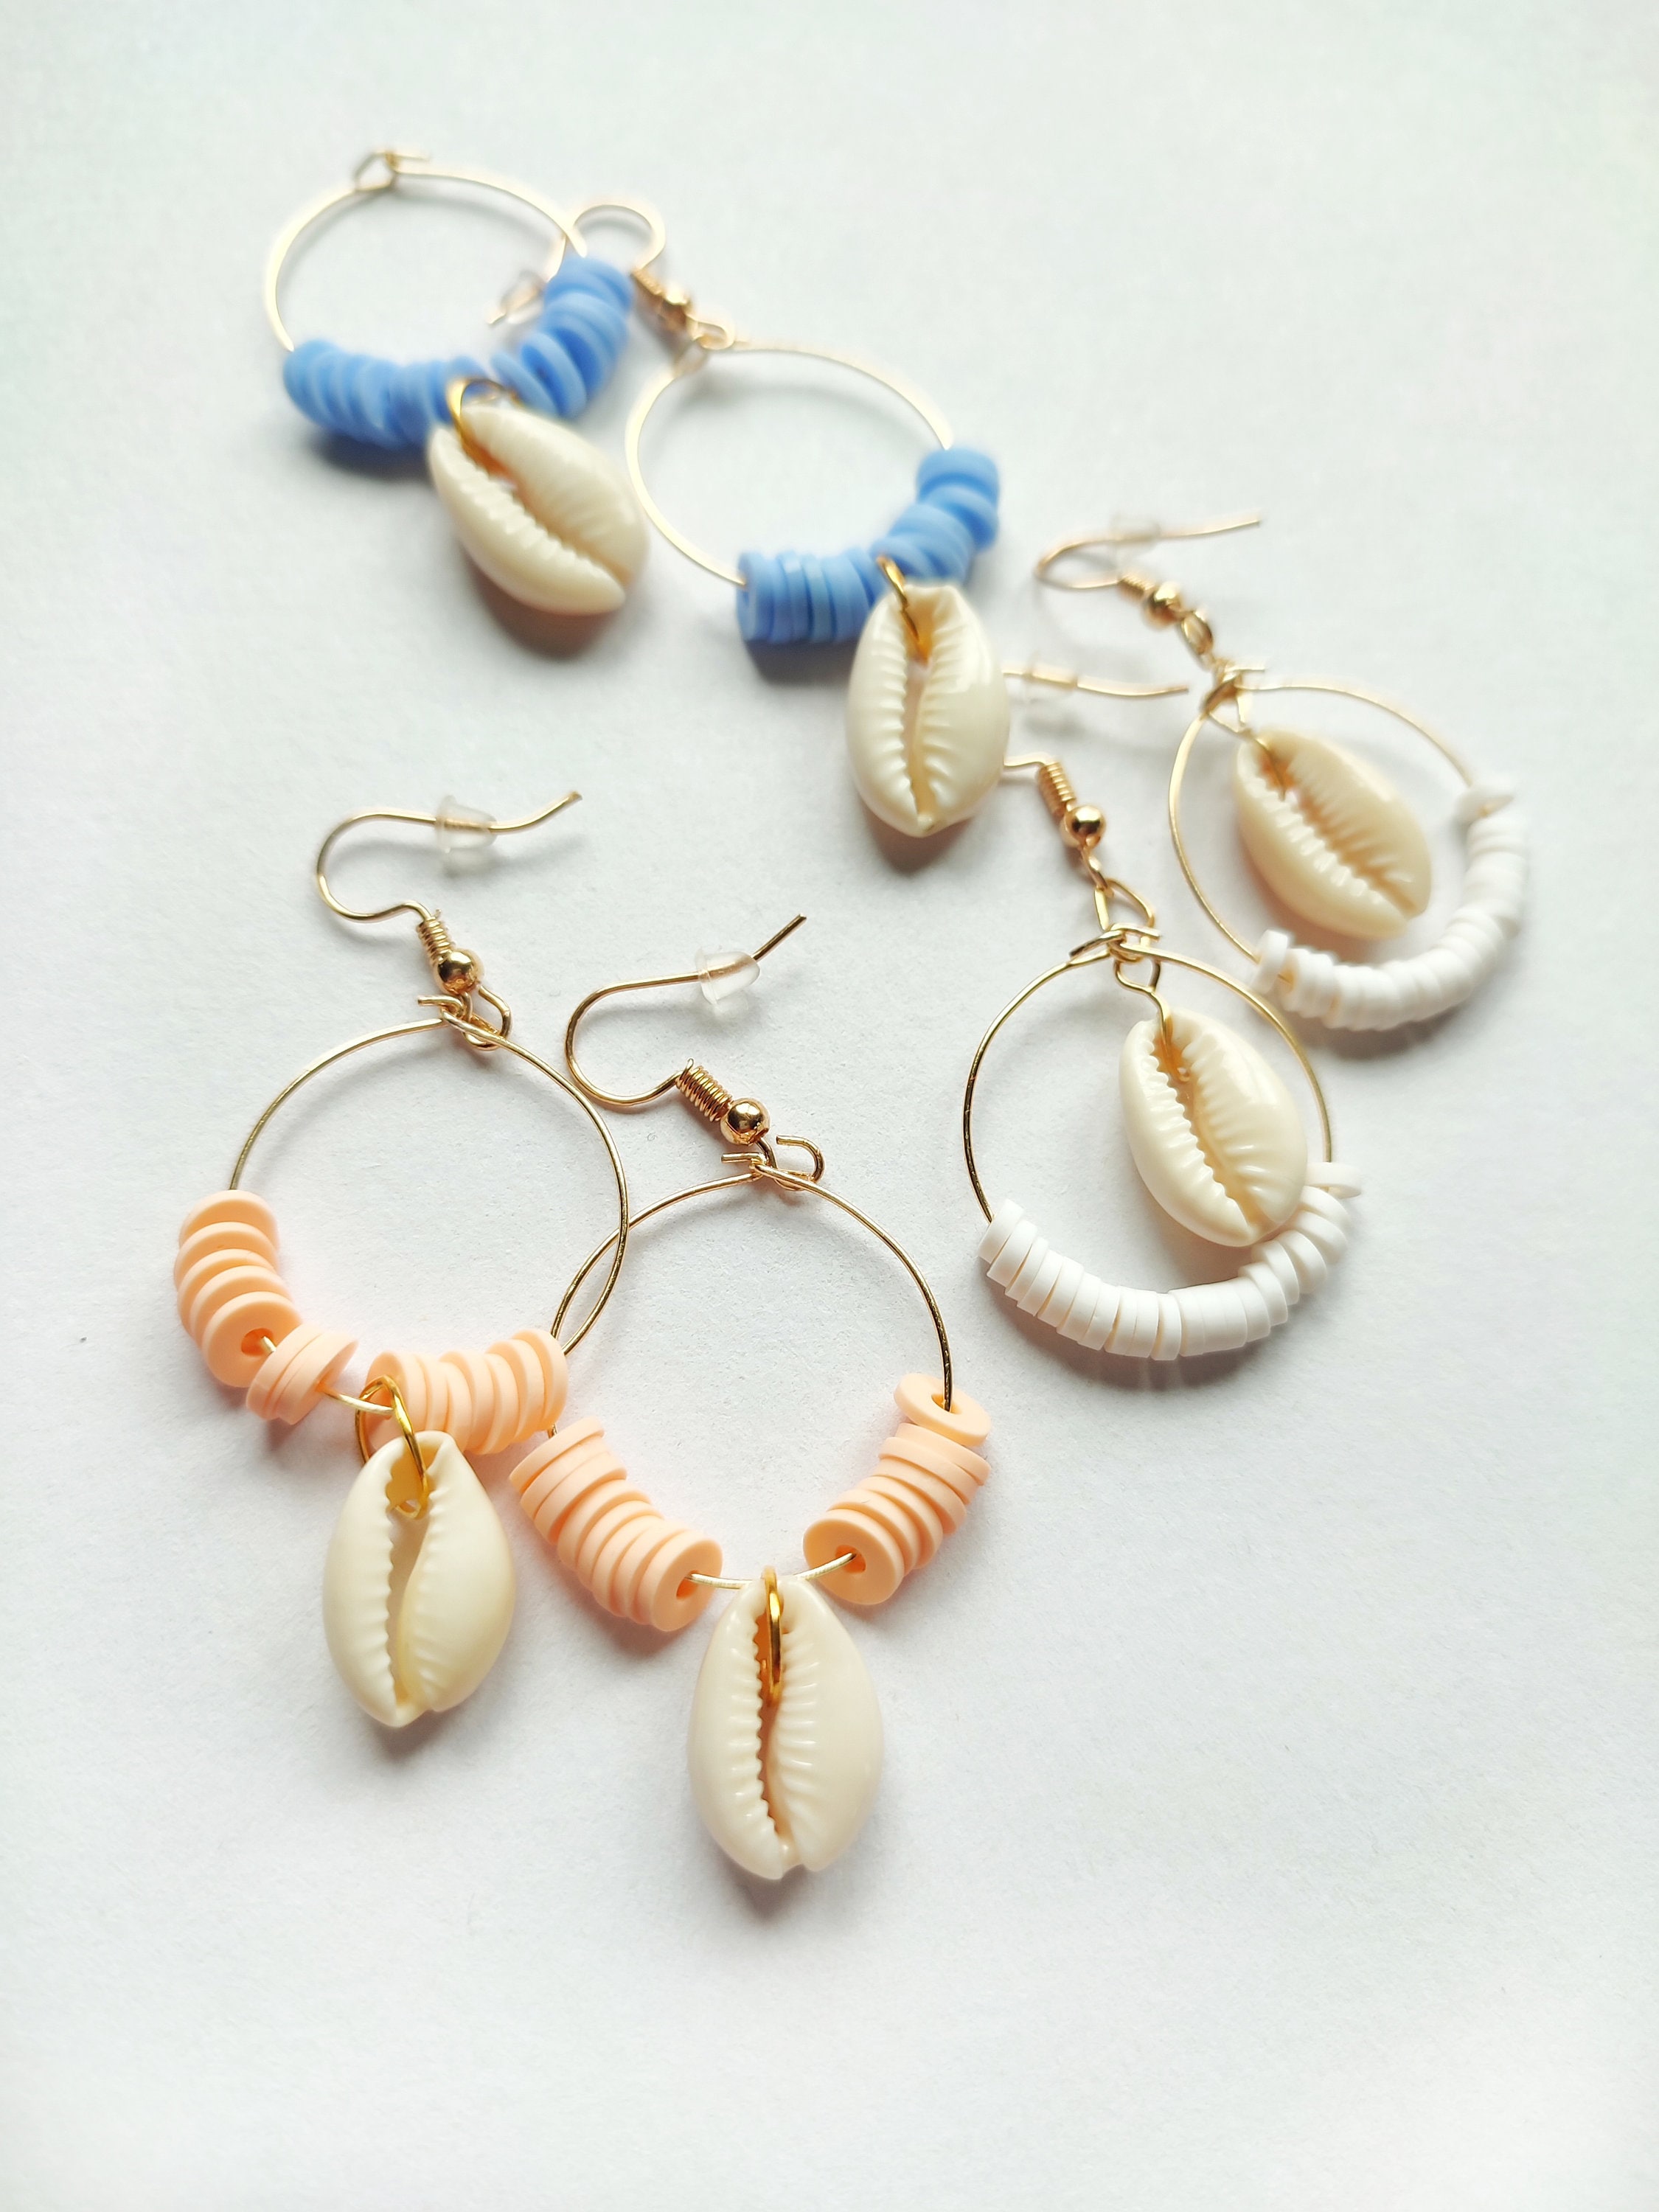 12pcs/set DIY Earring Making - Sea Shell Drop Dangle Charm Hoop Earrings  Mixed